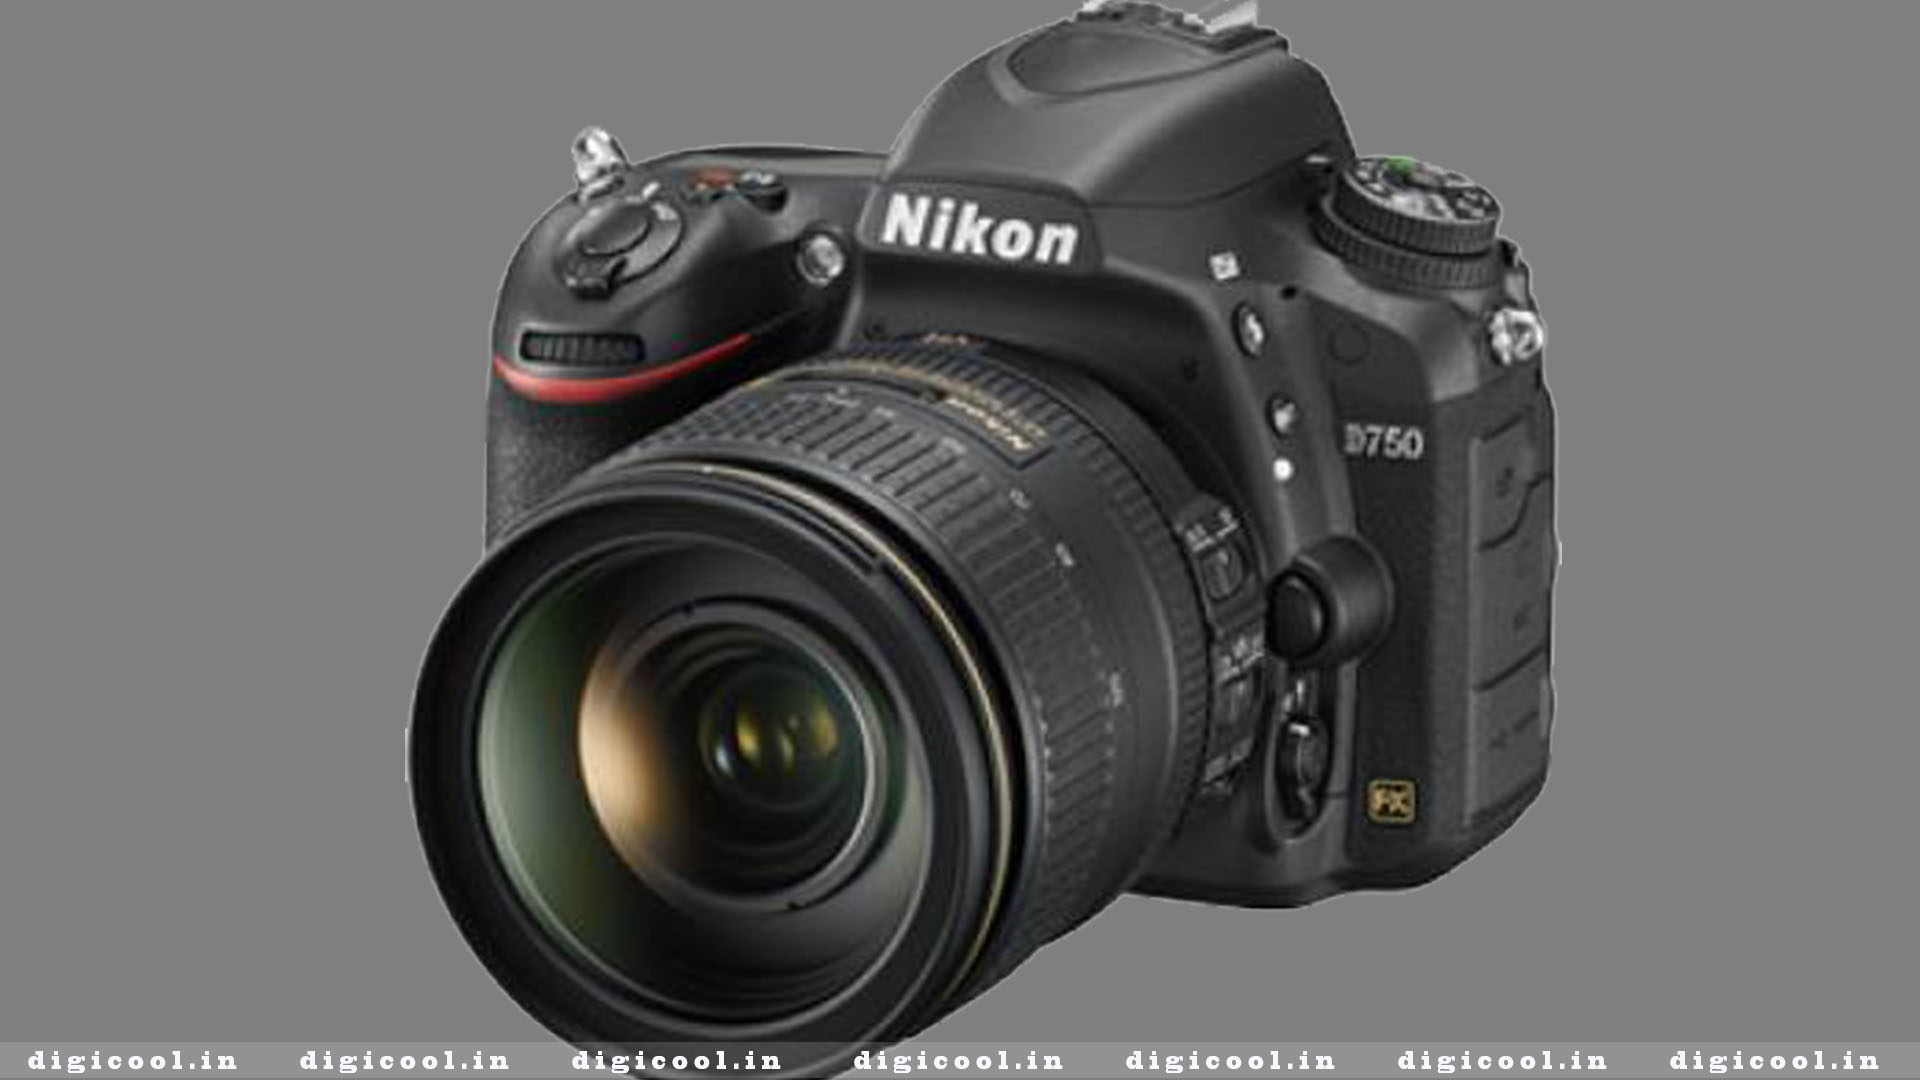 Canon EOS 3000D 18MP DSLR Camera in India 2020